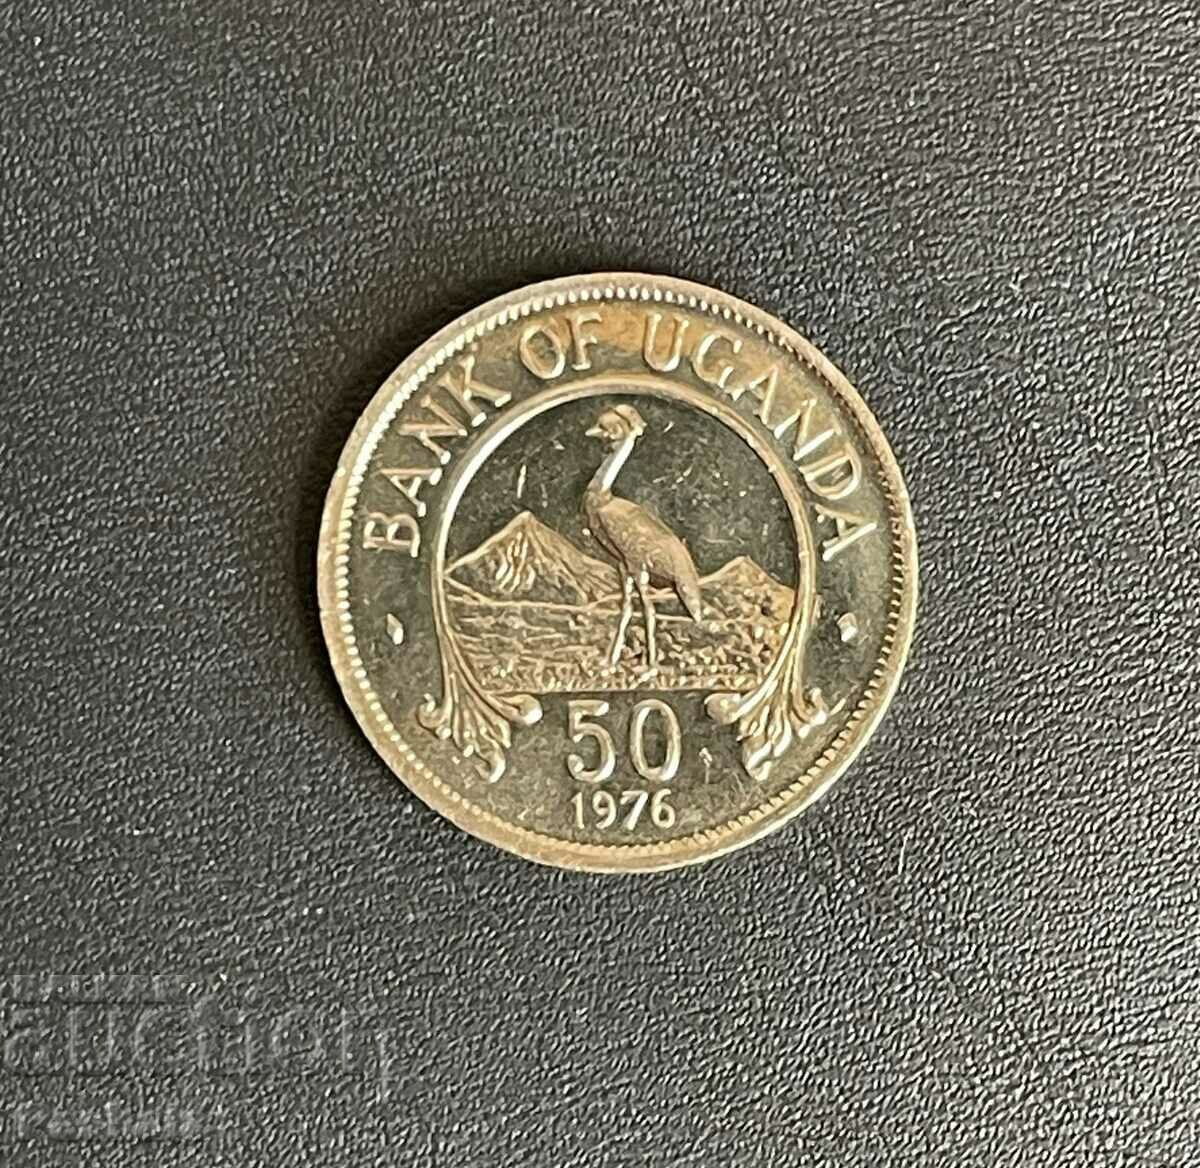 Uganda 50 cents 1976